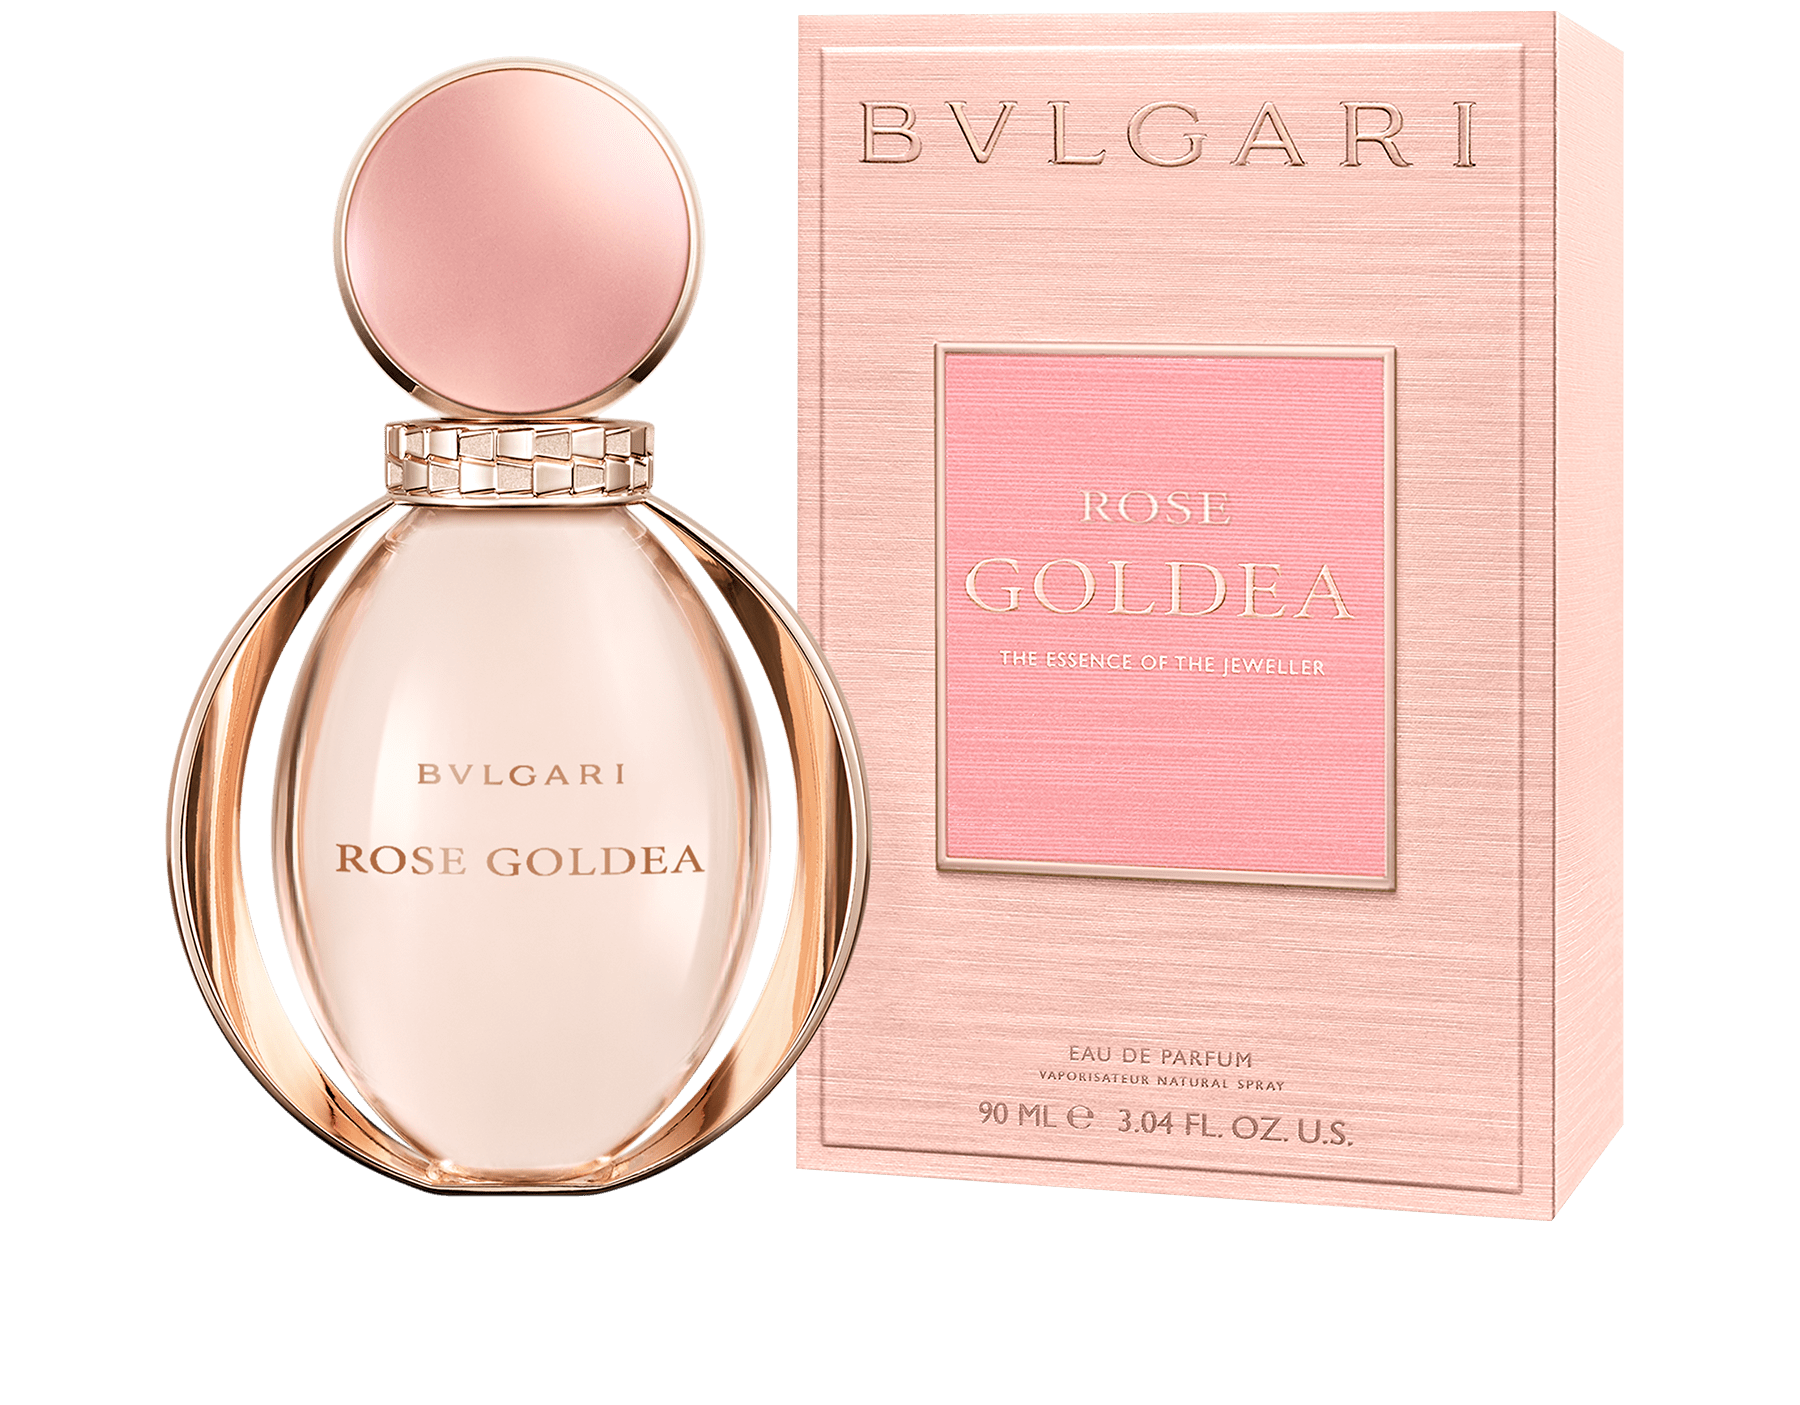 bvlgari perfume for women